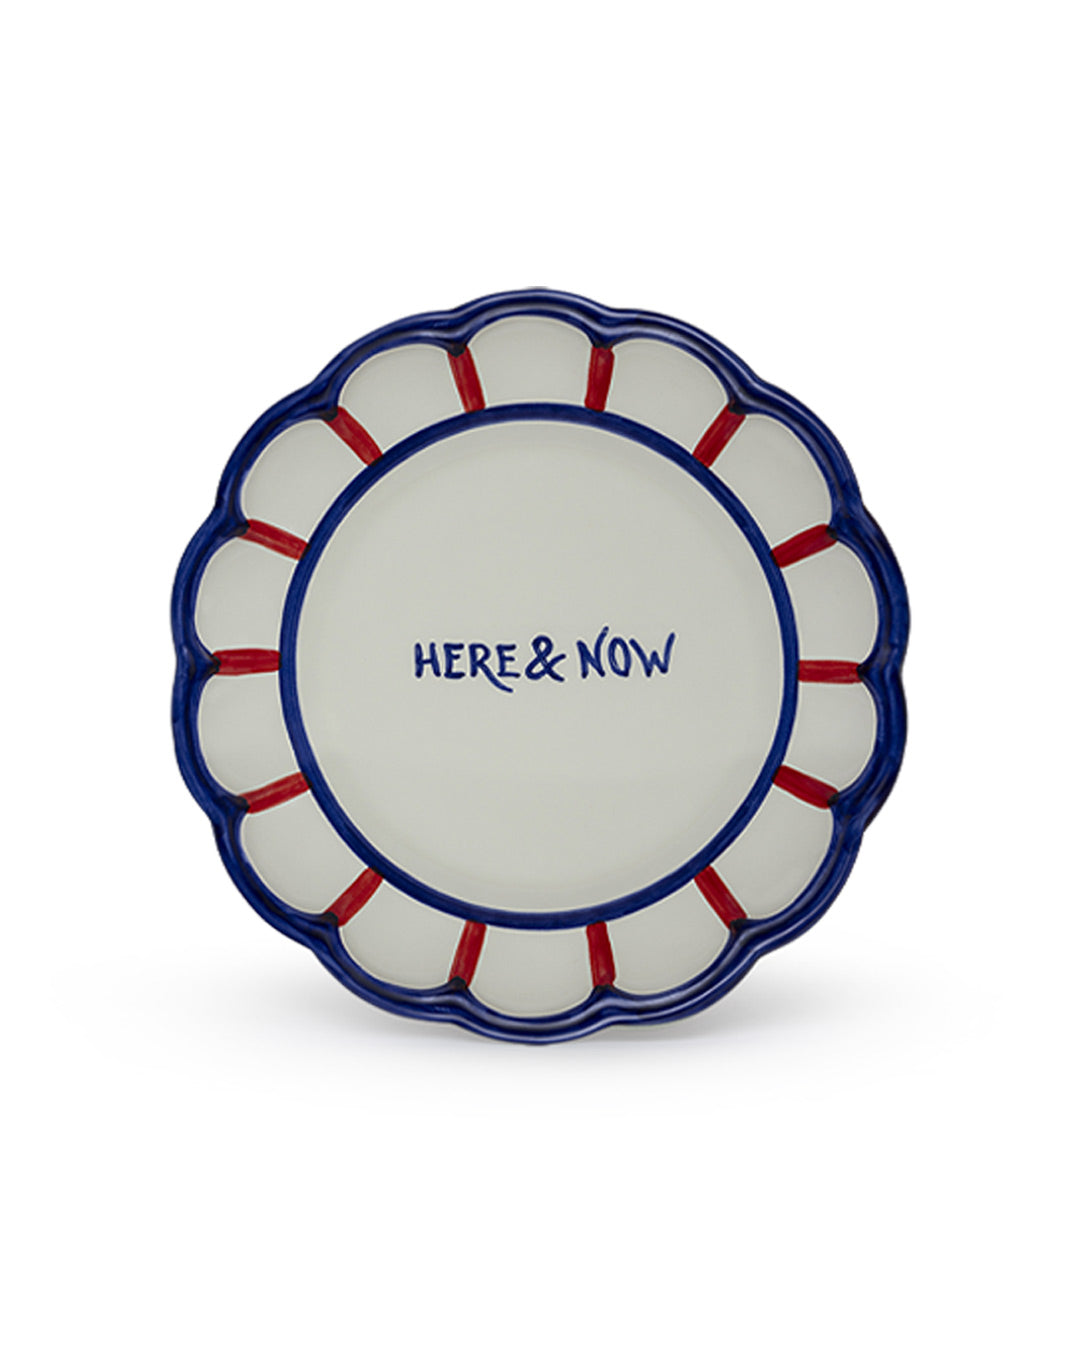 Artisanal Plate handcrafted handpainted handmade kitchenware tableware